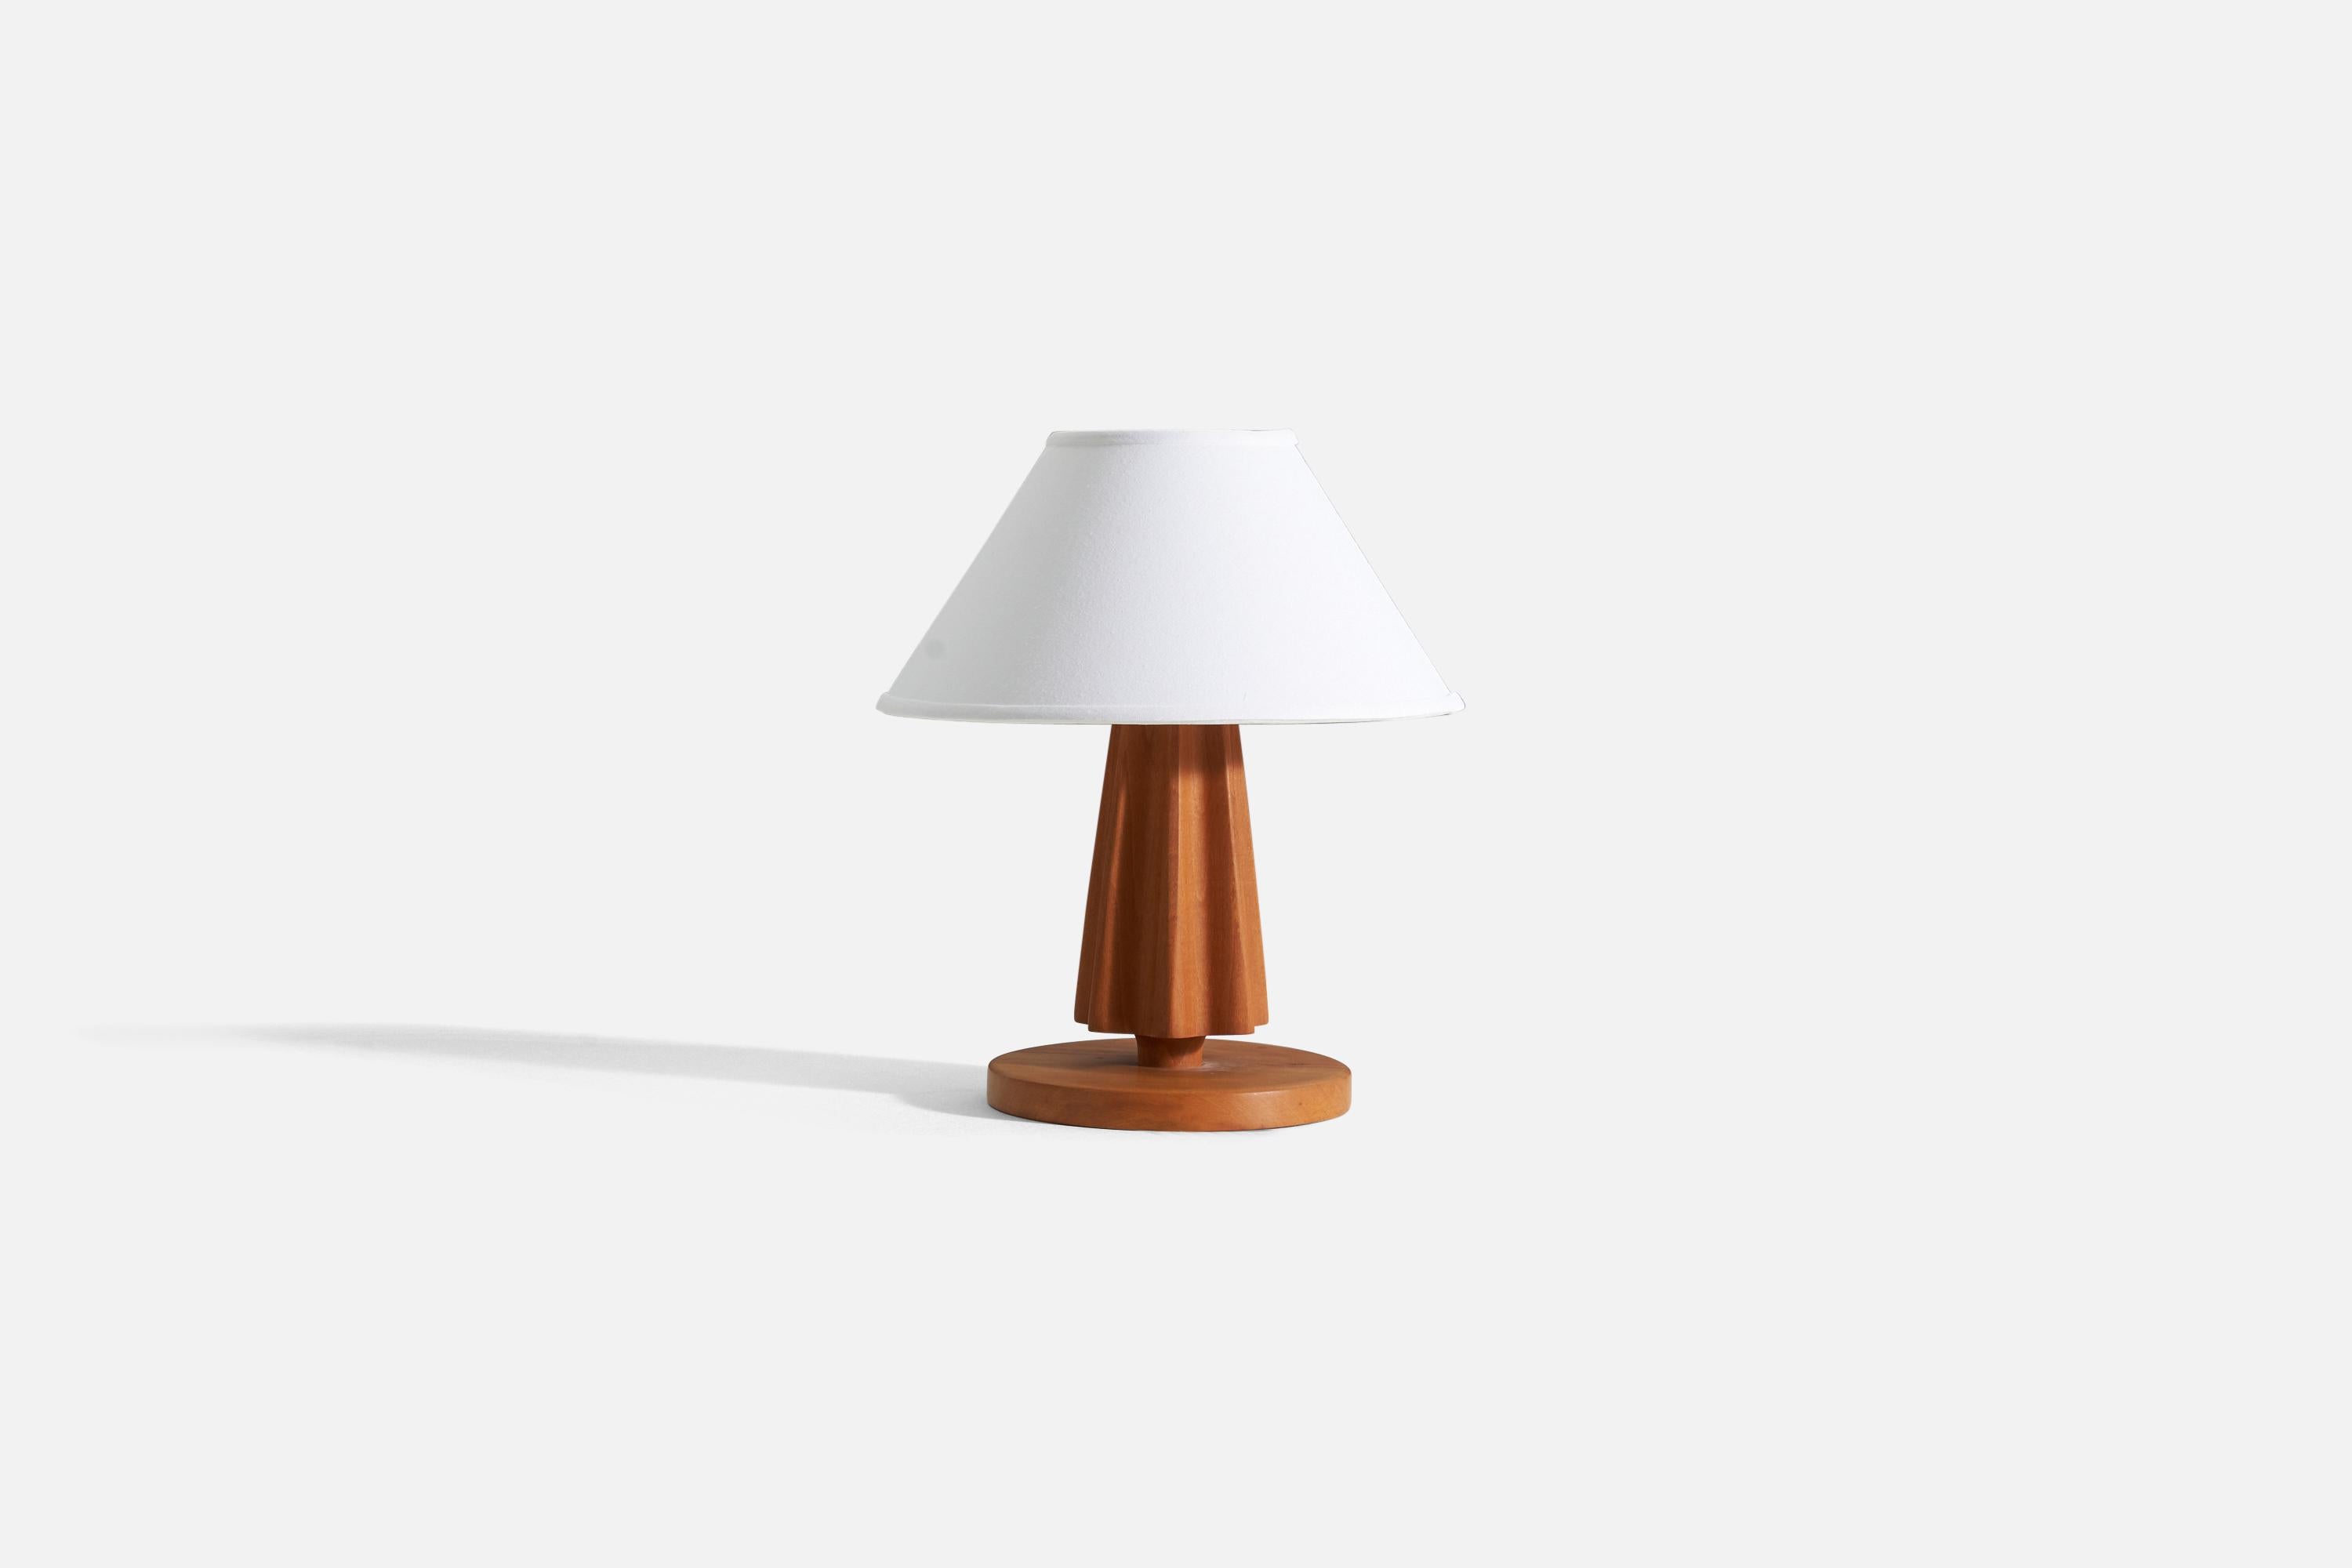 Lampe de table en bois massif, conçue et fabriquée en Suède, C.C.. 

Vendu sans abat-jour.

Pour référence :
Dimensions de la lampe avec abat-jour : H 16.5